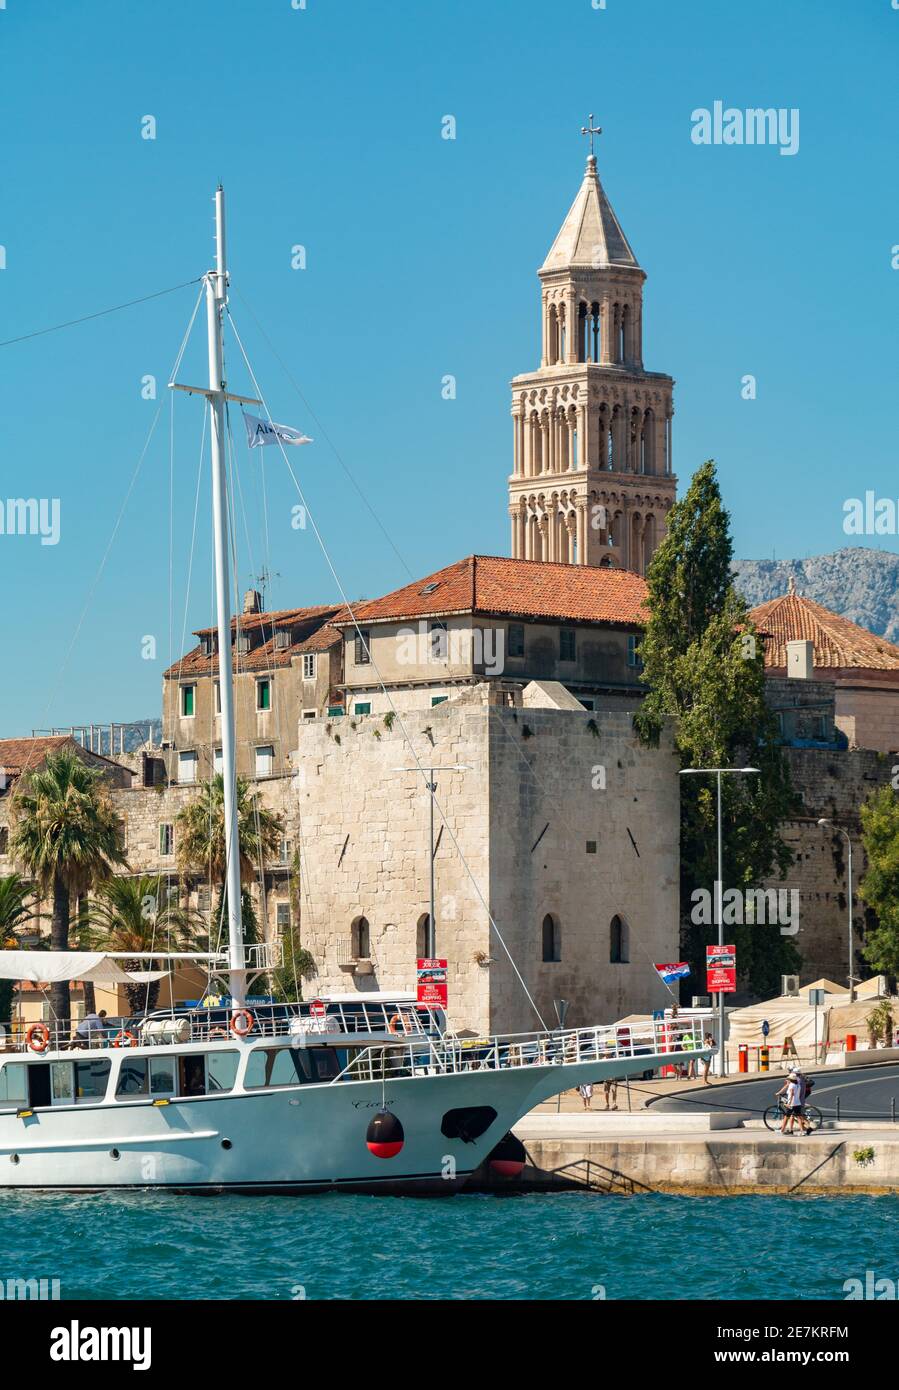 Une photo du front de mer de Split, avec la tour de la cathédrale Saint Domnius qui domine les bâtiments. Banque D'Images